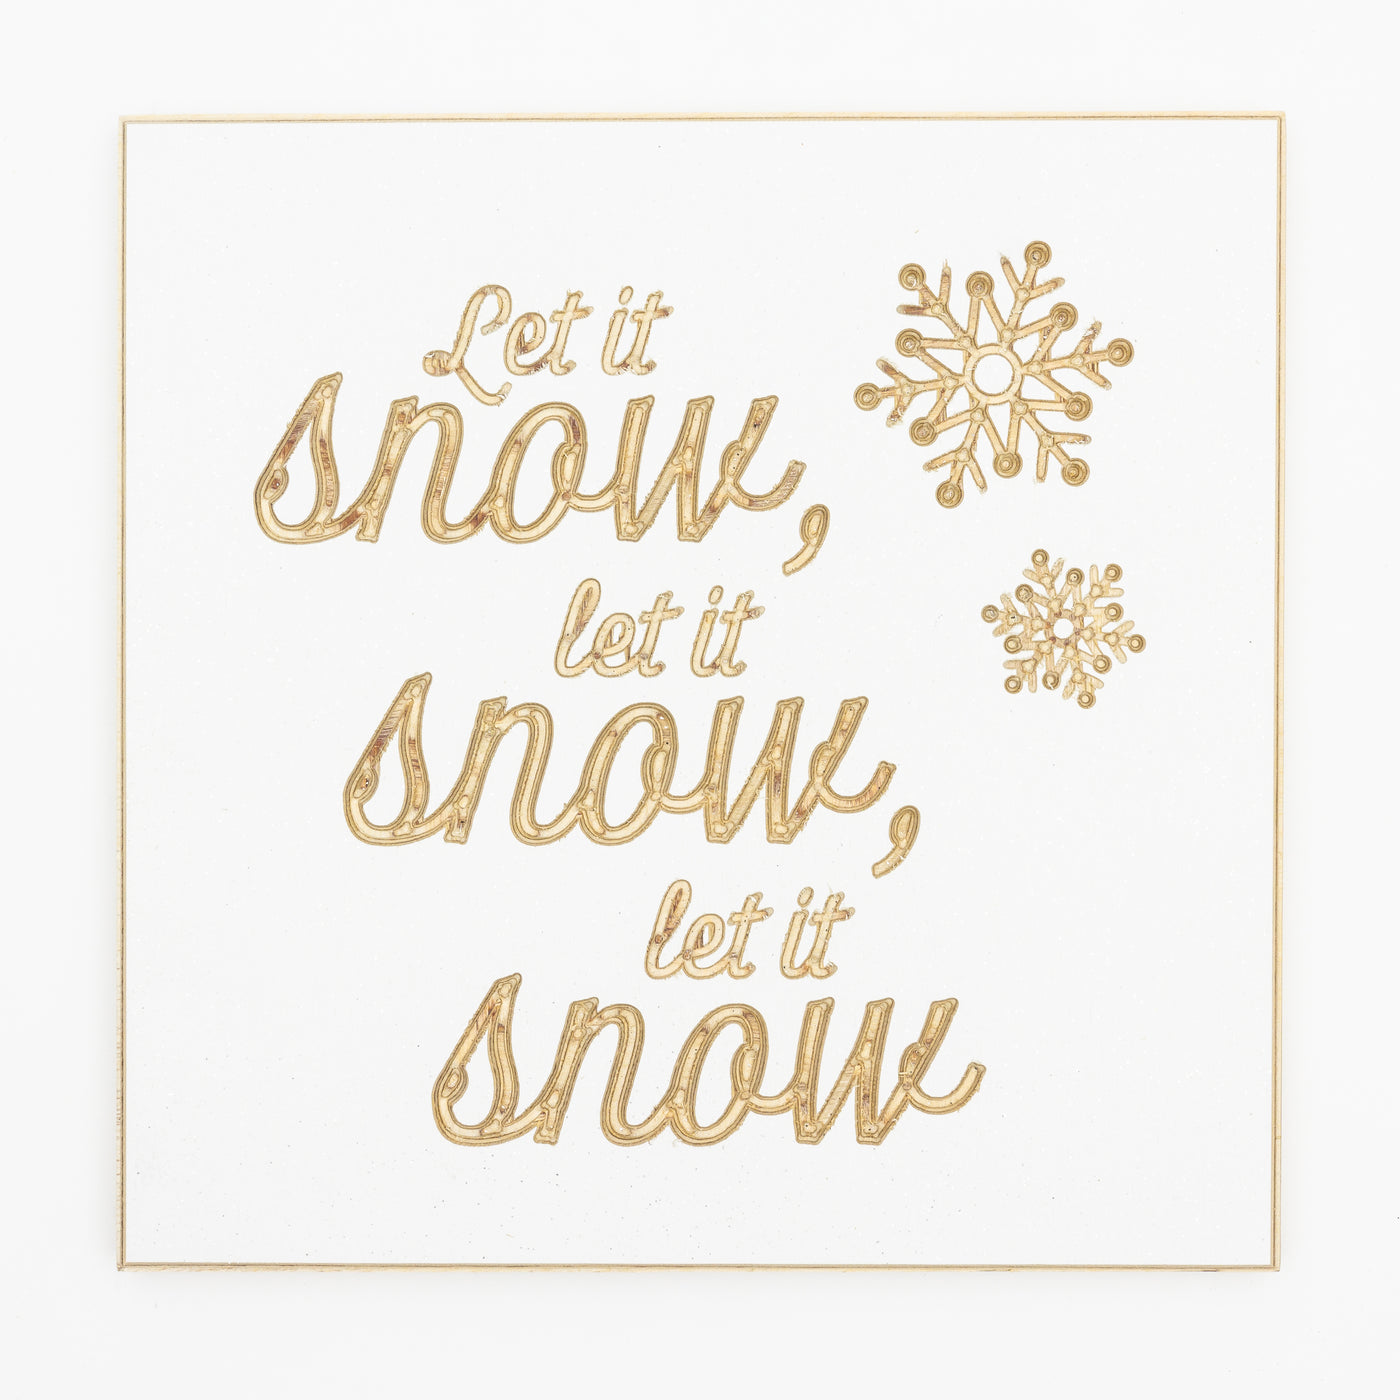 Let it snow, let it snow, let it snow